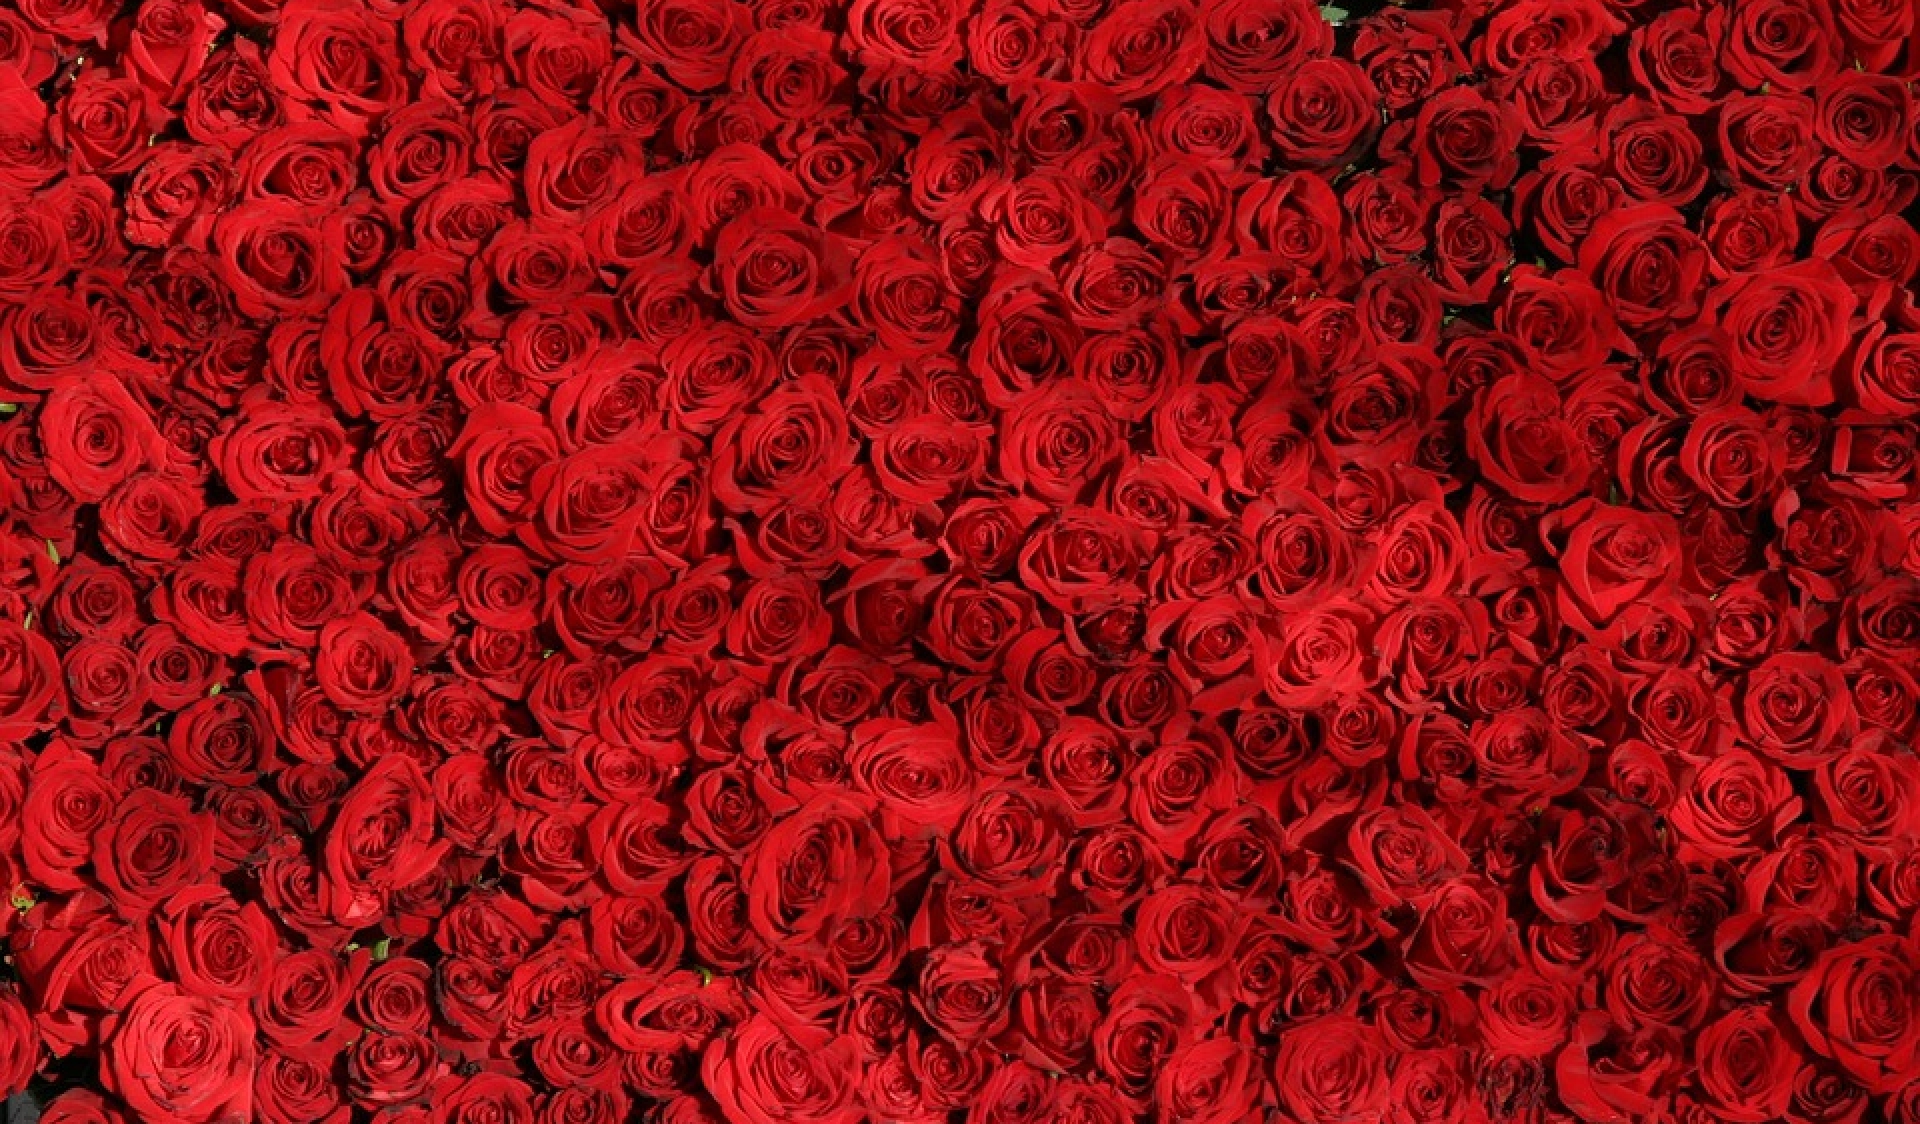 Rose rosse